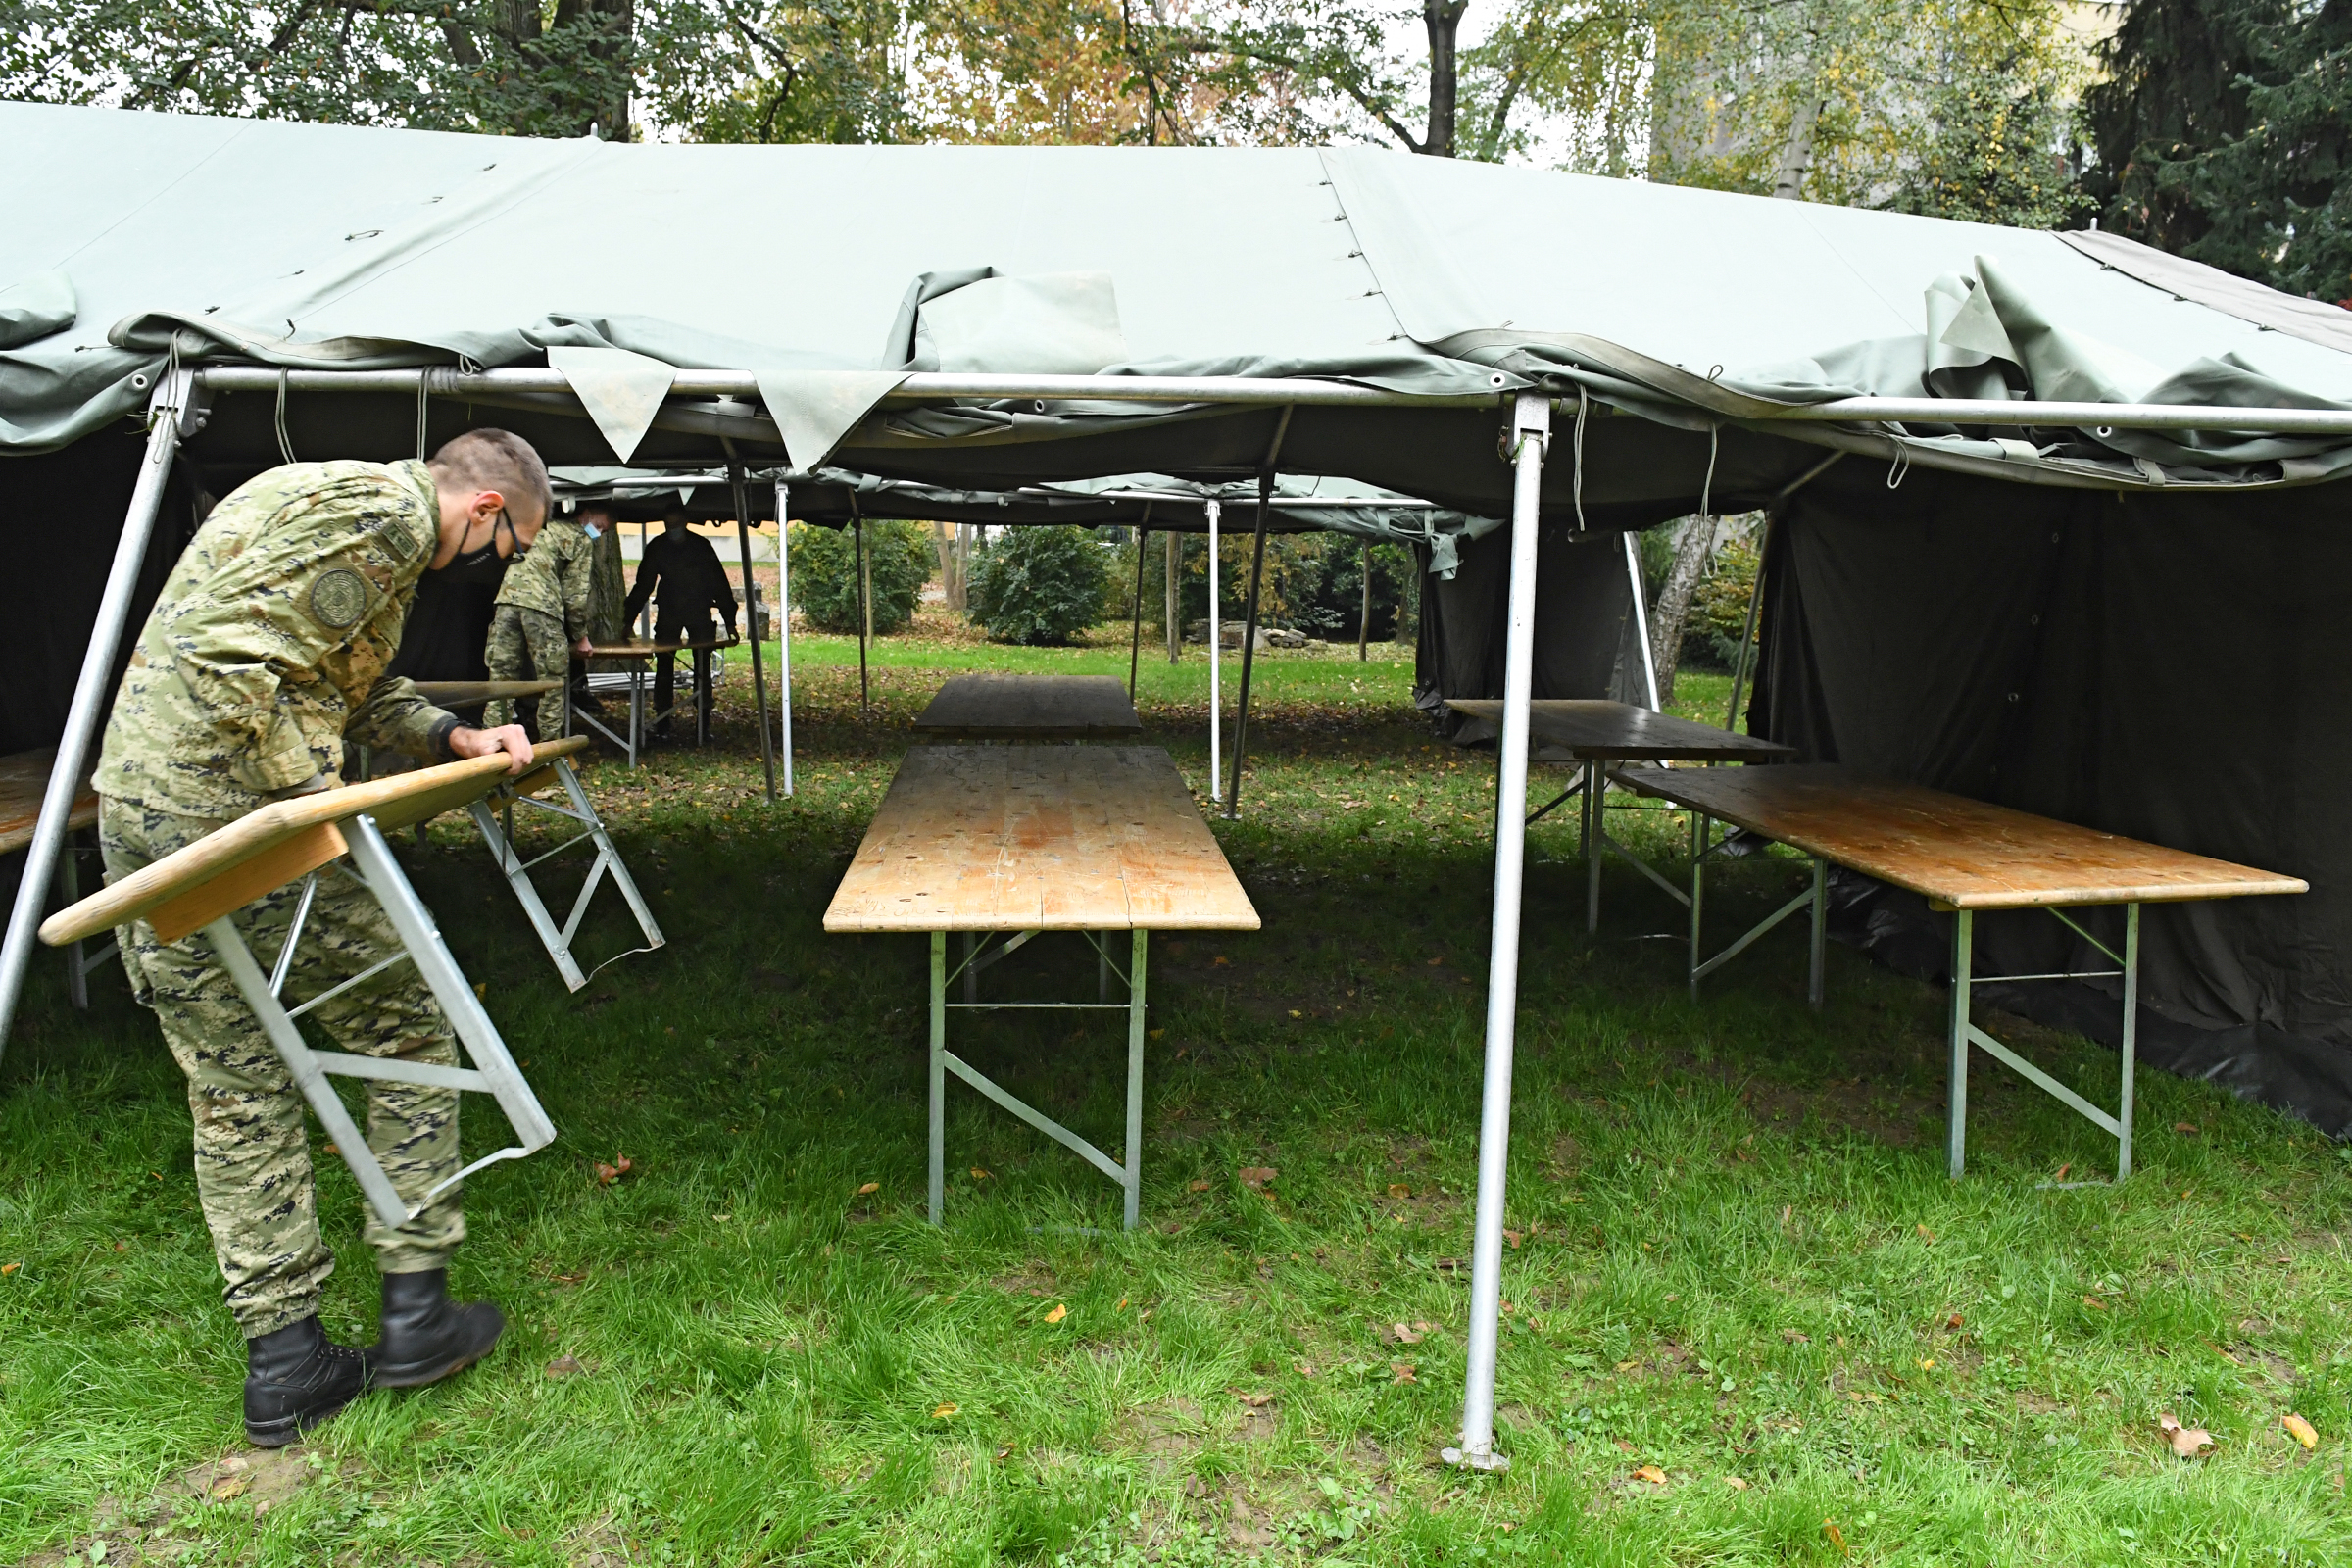 Šatori Hrvatske vojske kod Akademije likovnih umjetnosti